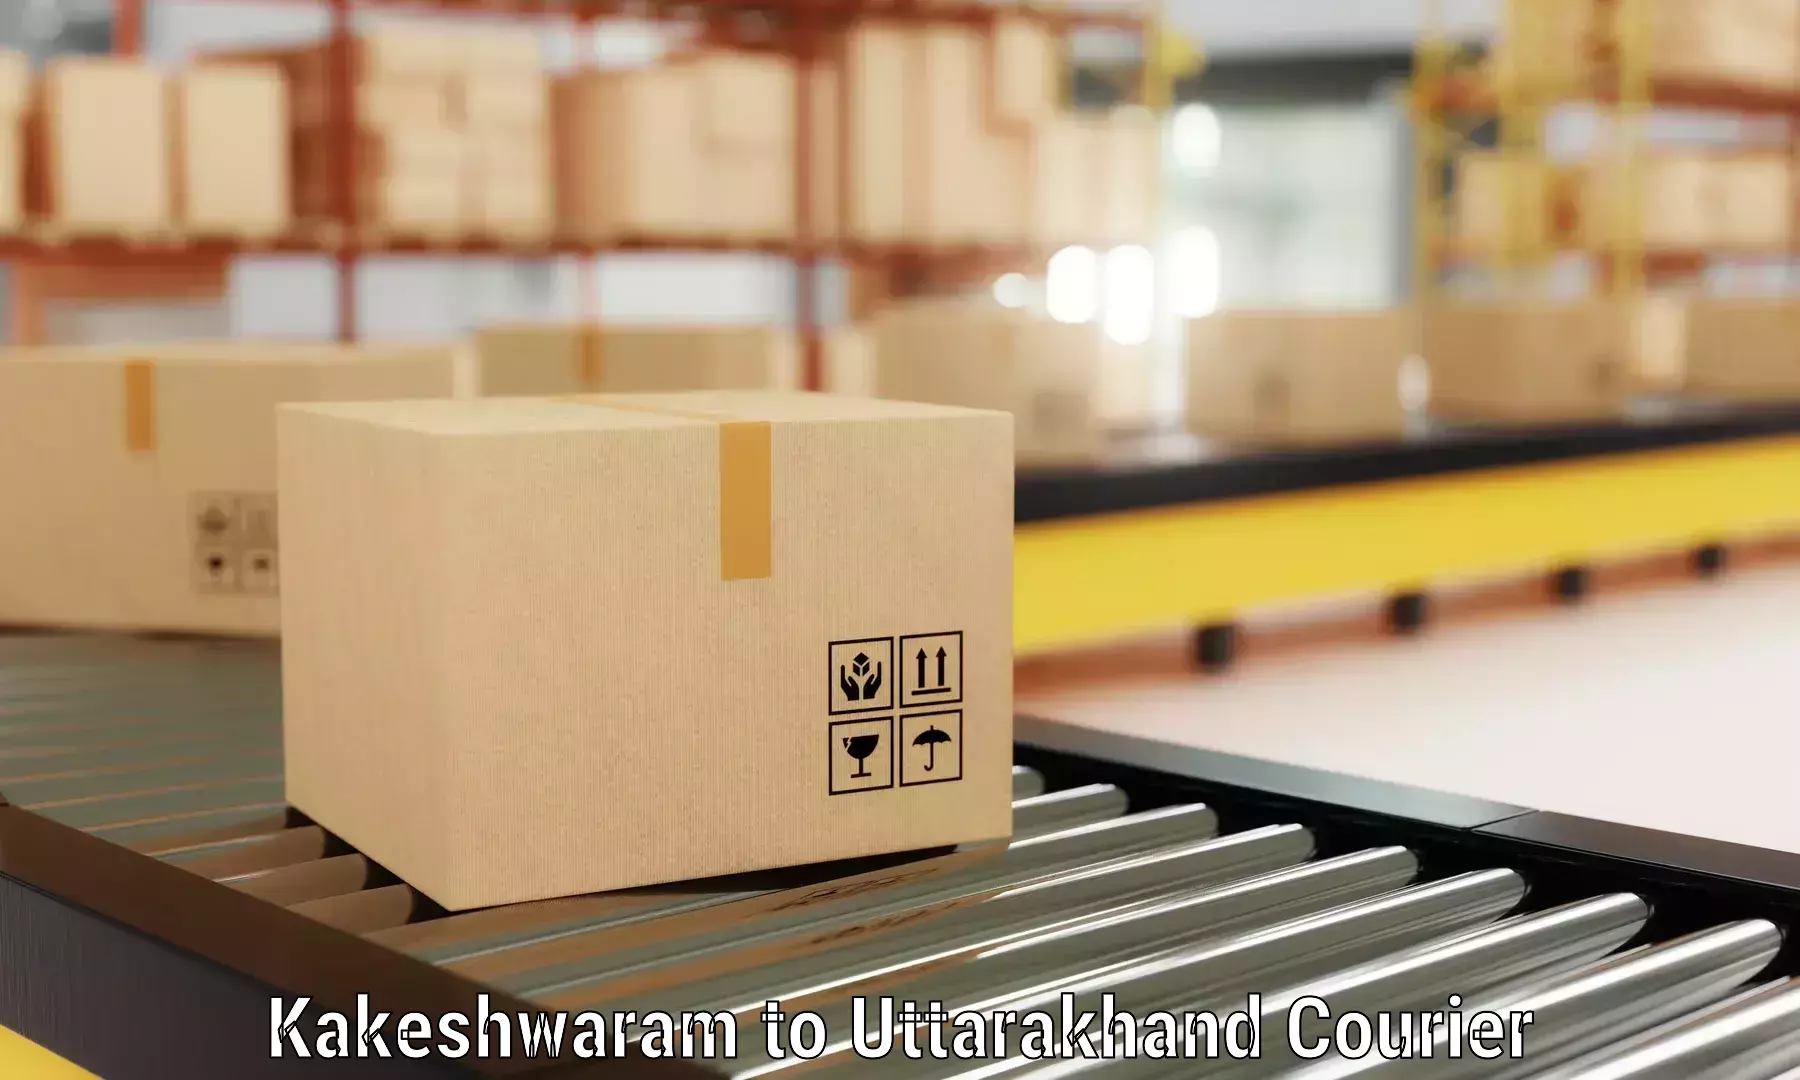 Furniture transport experts Kakeshwaram to Joshimath